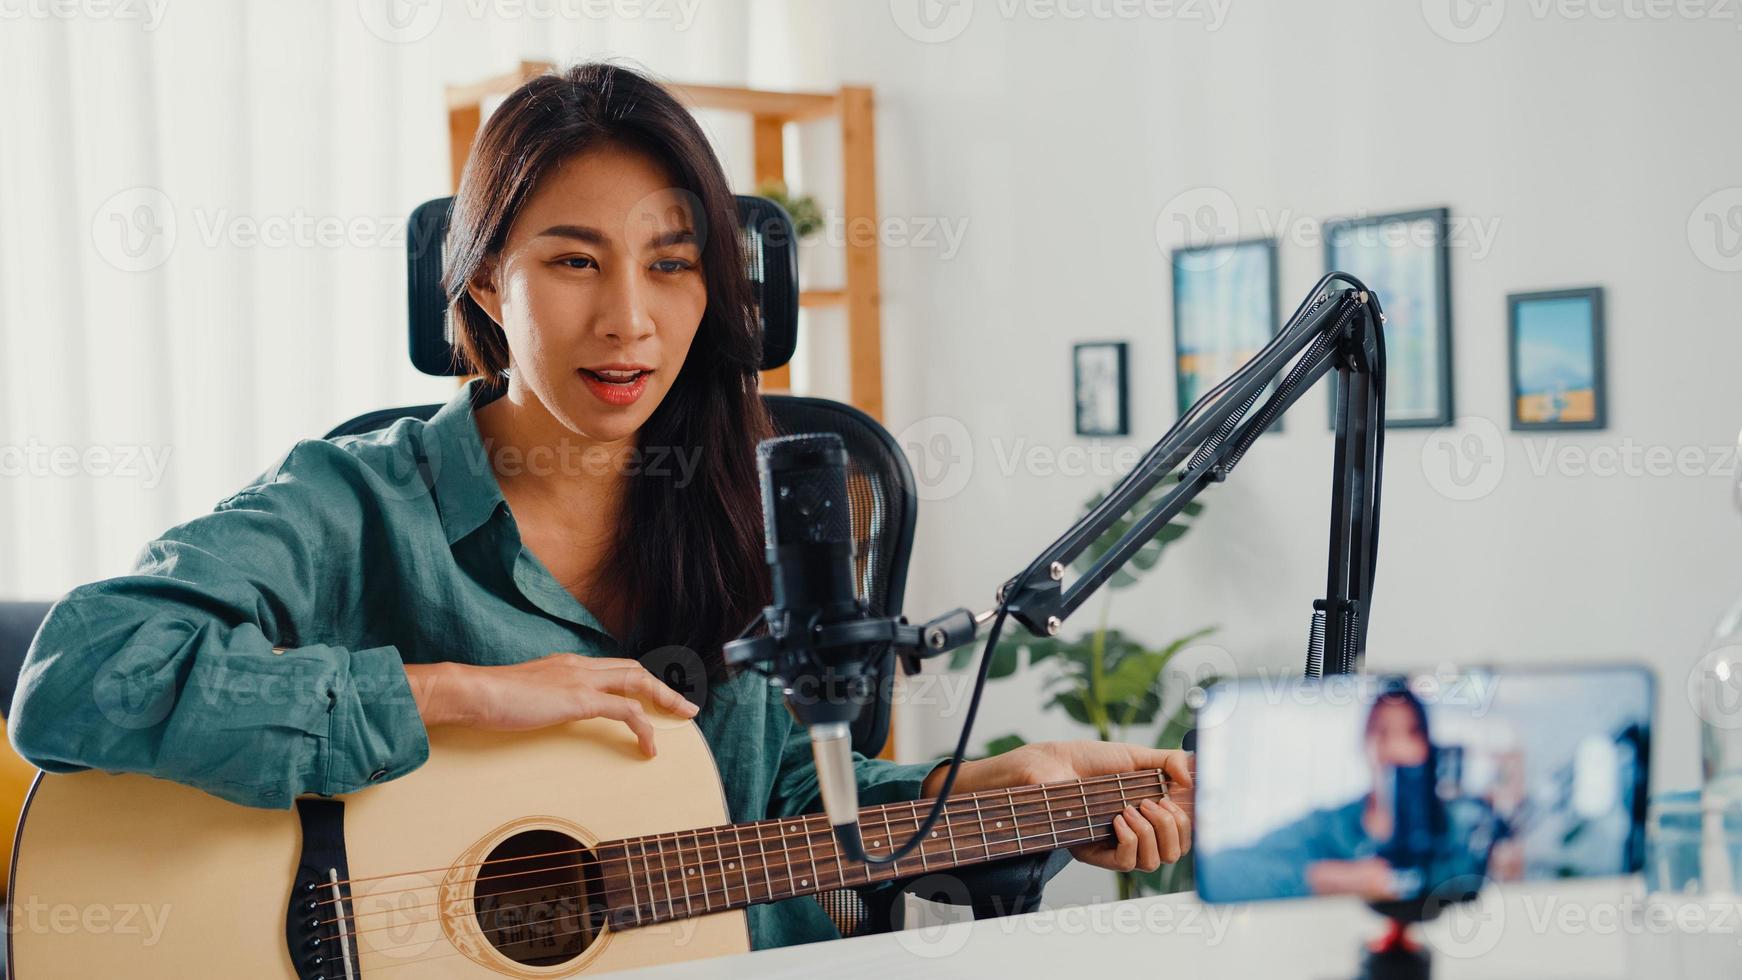 influenceuse adolescente asiatique jouer de la musique de guitare utiliser un enregistrement de microphone avec un smartphone pour que le public en ligne écoute à la maison. une podcasteuse crée un podcast audio depuis son home studio, reste à la maison concept. photo